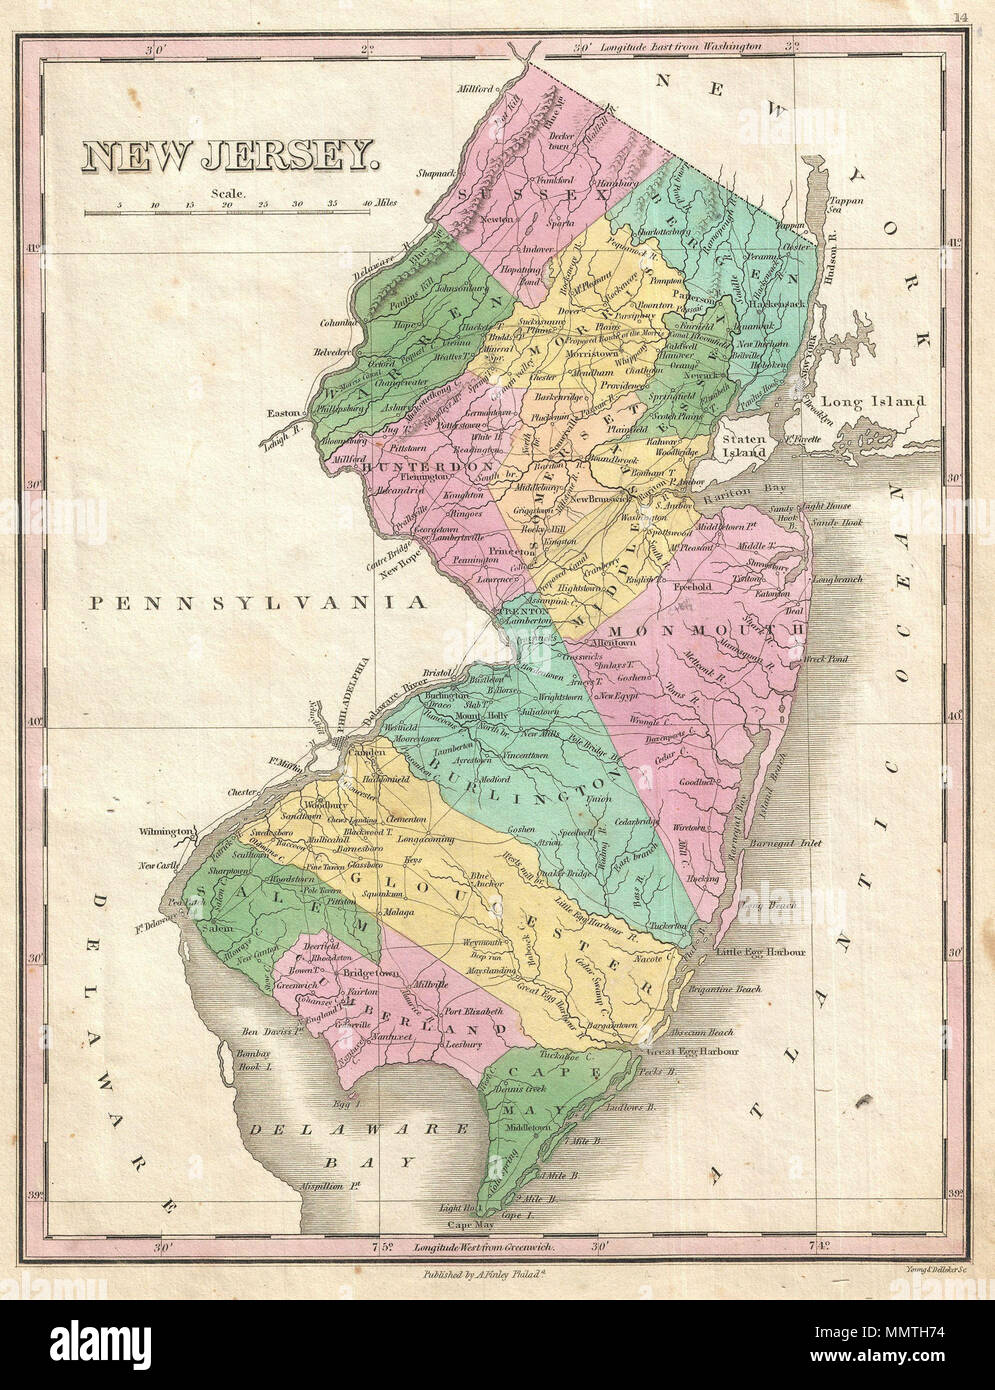 Inglés: un hermoso de Finley es importante 1827 Mapa de Nueva Jersey. Describe con detalle el estado moderado de Finley del clásico minimalista. Muestra caminos fluviales, carreteras, canales y